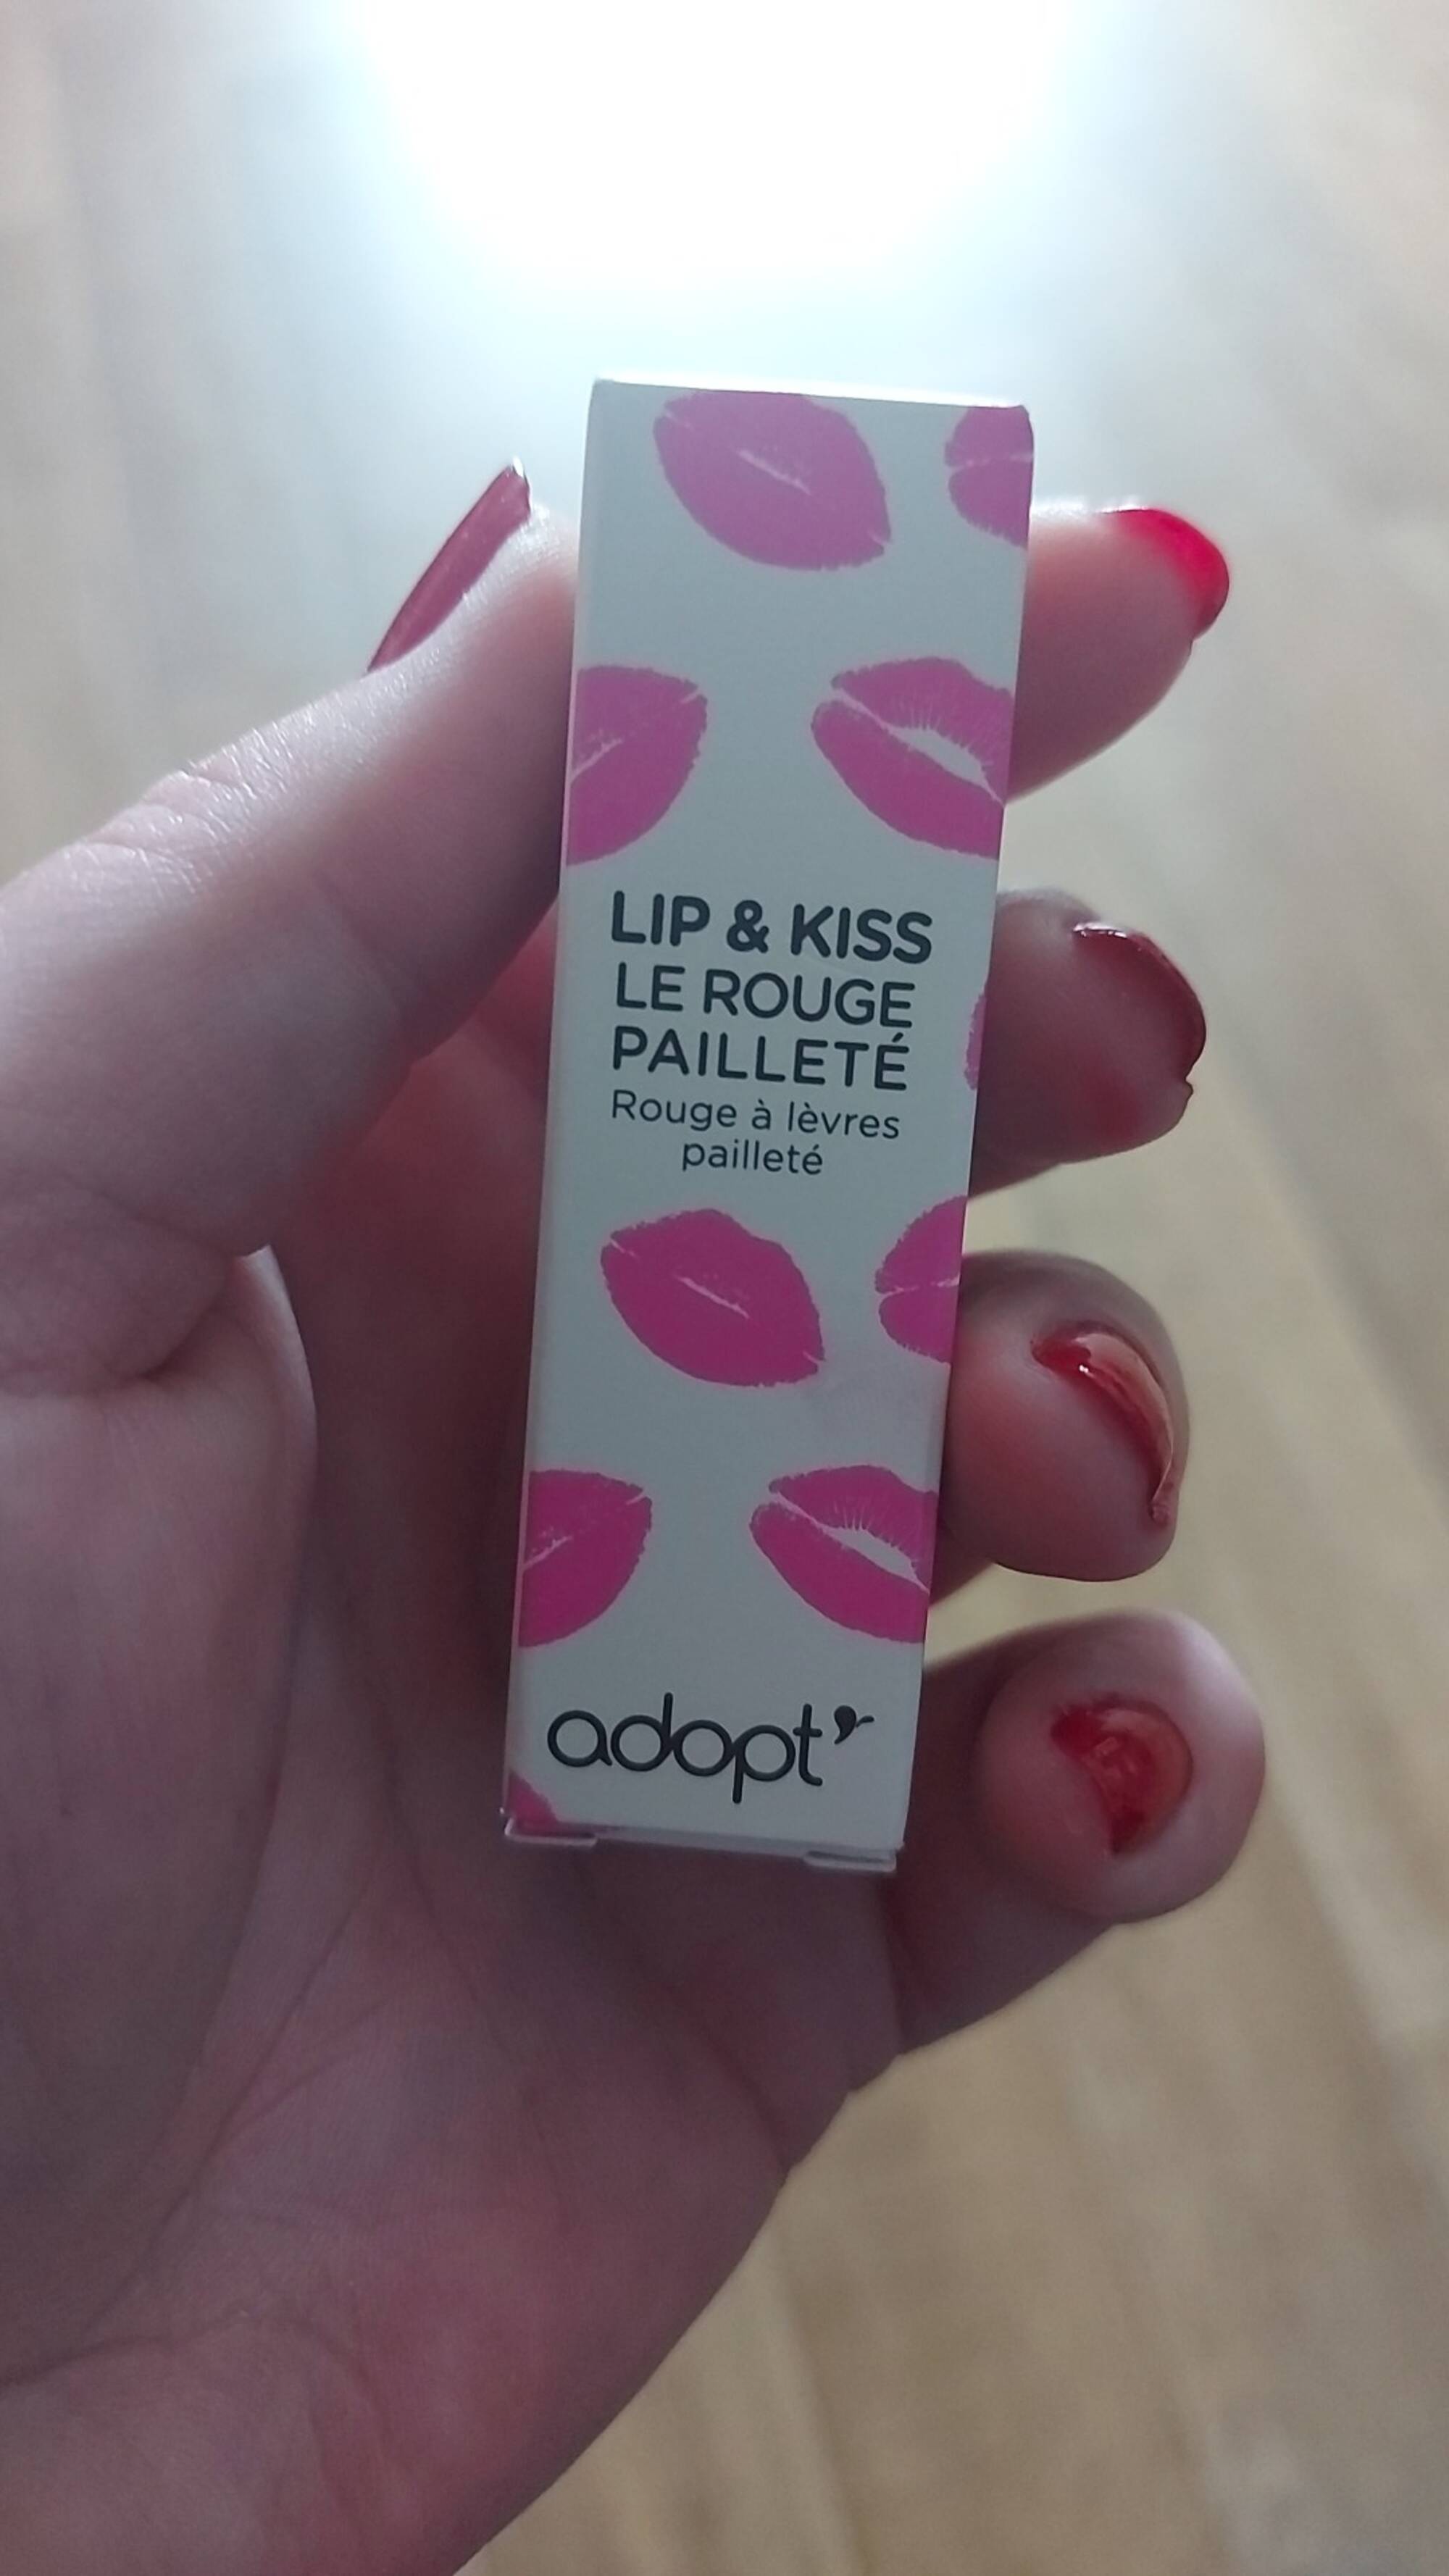 ADOPT' - Lip & kiss - Rouge à lèvres pailleté